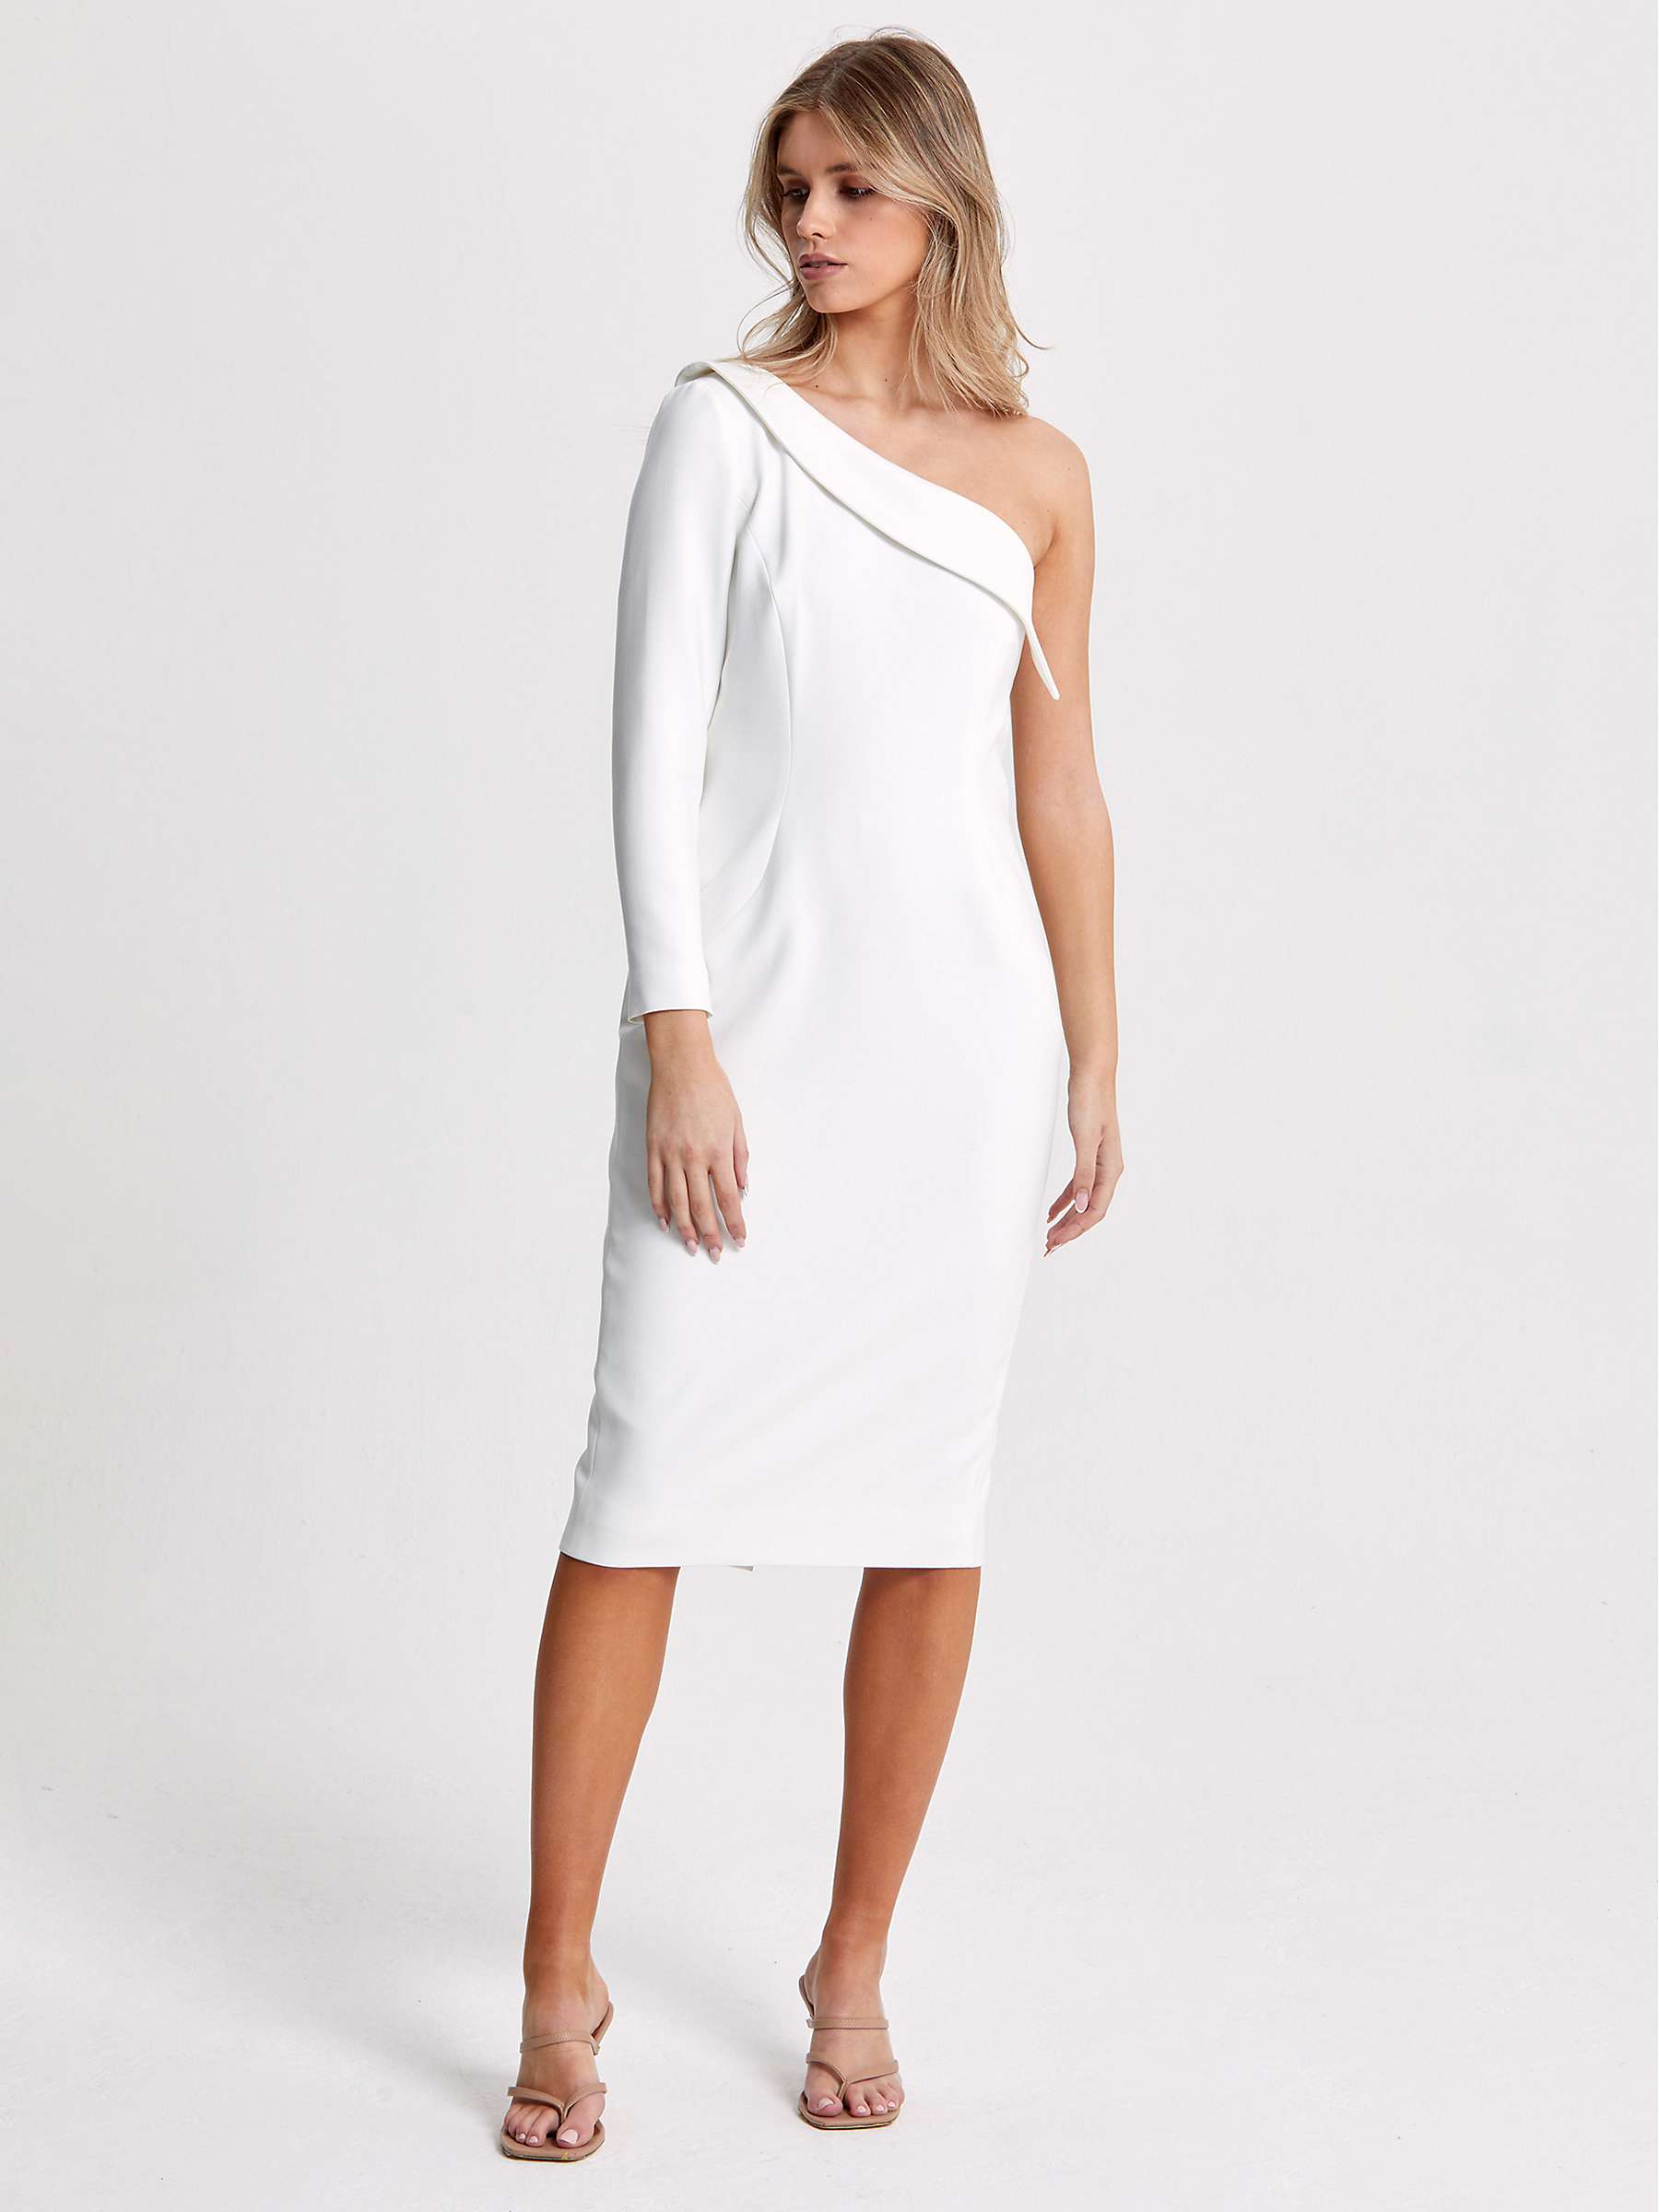 Buy Helen McAlinden Harlow One Shoulder Dress, White Online at johnlewis.com